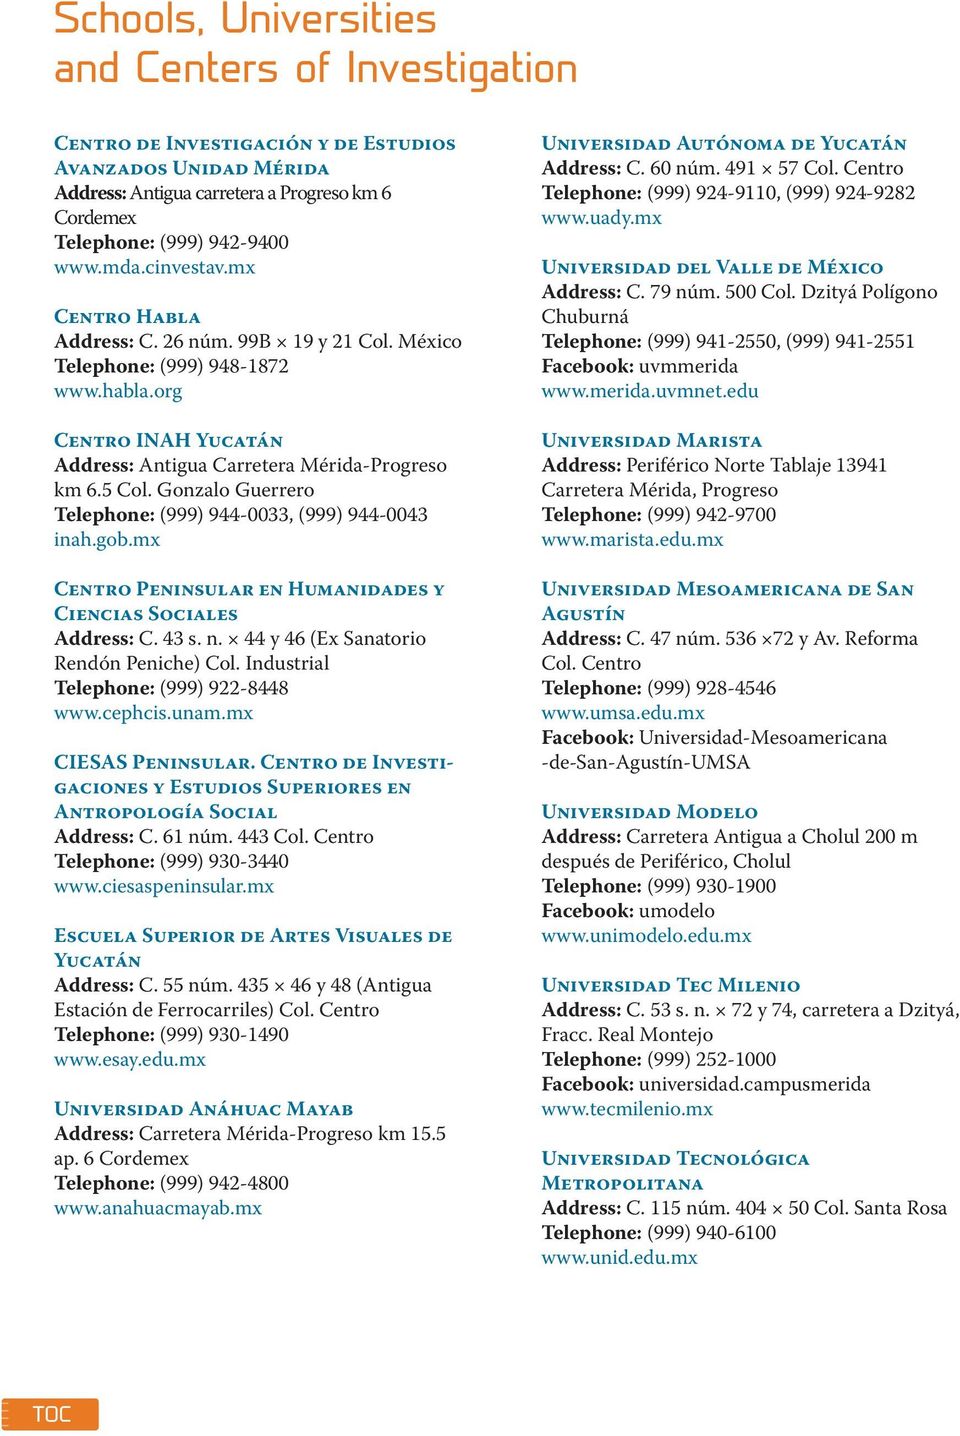 Centro de Investigaciones y Estudios Superiores en Antropología Social Address: Escuela Superior de Artes Visuales de Yucatán Address: Universidad Anáhuac Mayab Address: